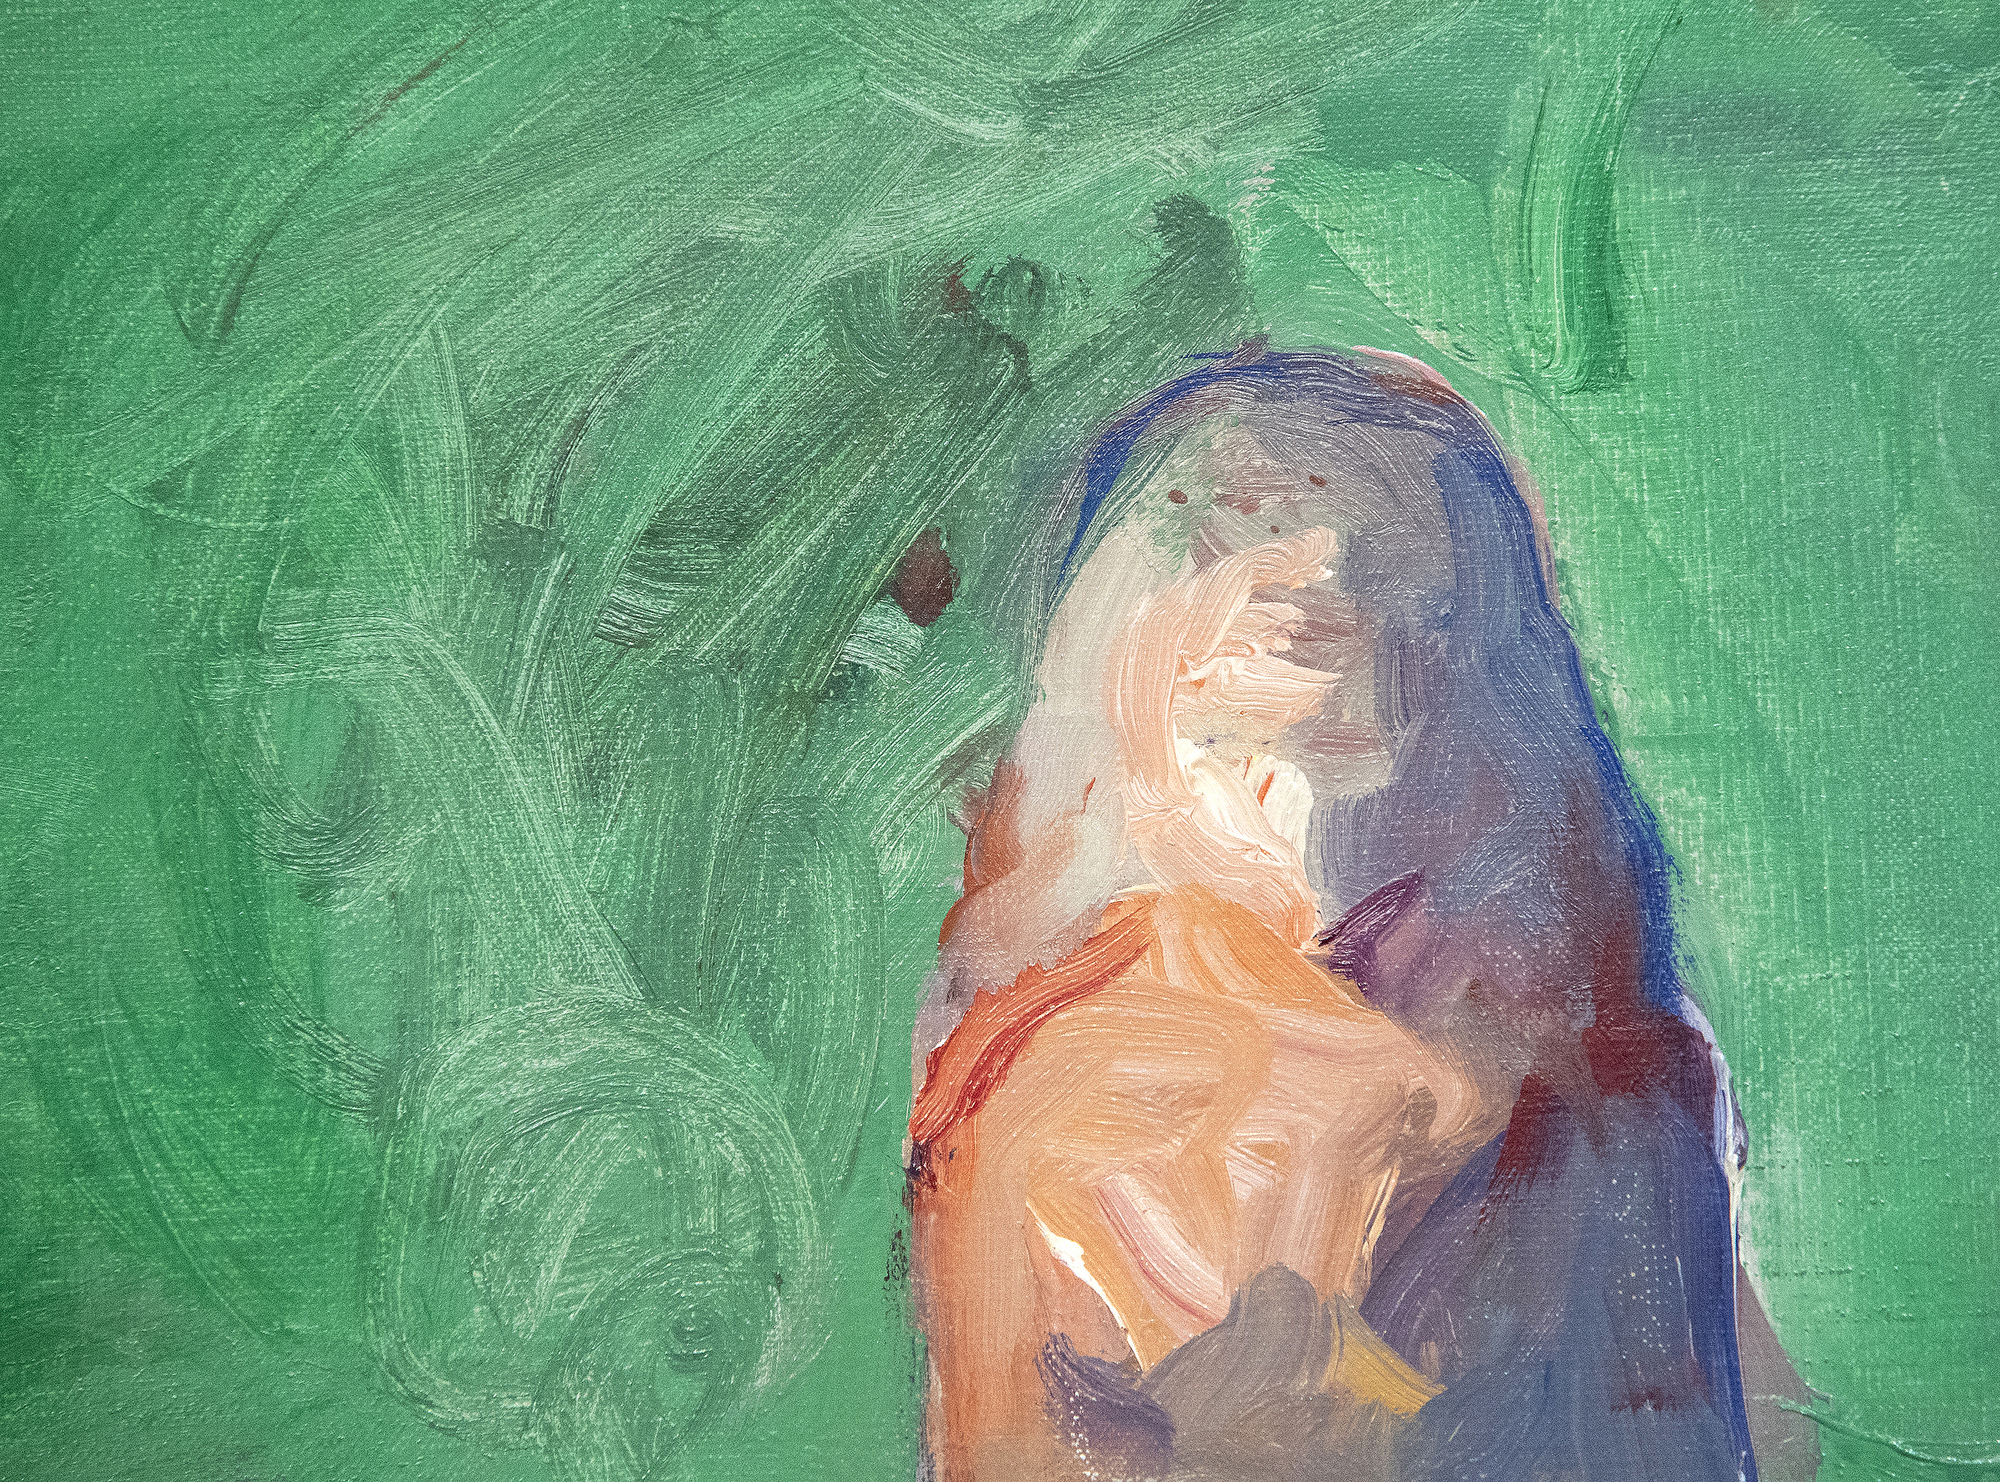 Nathan Olivera est souvent associé aux peintres figuratifs de la Bay Area en Californie, mais en réalité, son travail révèle son intérêt pour Willem de Kooning, Alberto Giacometti et Francis Bacon. Ces influences sont des caractéristiques marquantes de Nude Stepping from the Carpet. Peint alors qu&#039;Olivera avait une trentaine d&#039;années, c&#039;est exactement le genre de tableau qui a établi sa première réputation pour ses représentations obsédantes de figures isolées peintes dans un style improvisé. Le travail ultérieur d&#039;Oliveira reflète le commentaire influent de de Kooning concernant le défi de peindre des souvenirs visuels et de créer des figures ayant une présence ténue, mais la forte ligne d&#039;horizon qui sous-tend ce paysage confère à la figure une présence plus corporelle qu&#039;à l&#039;accoutumée.